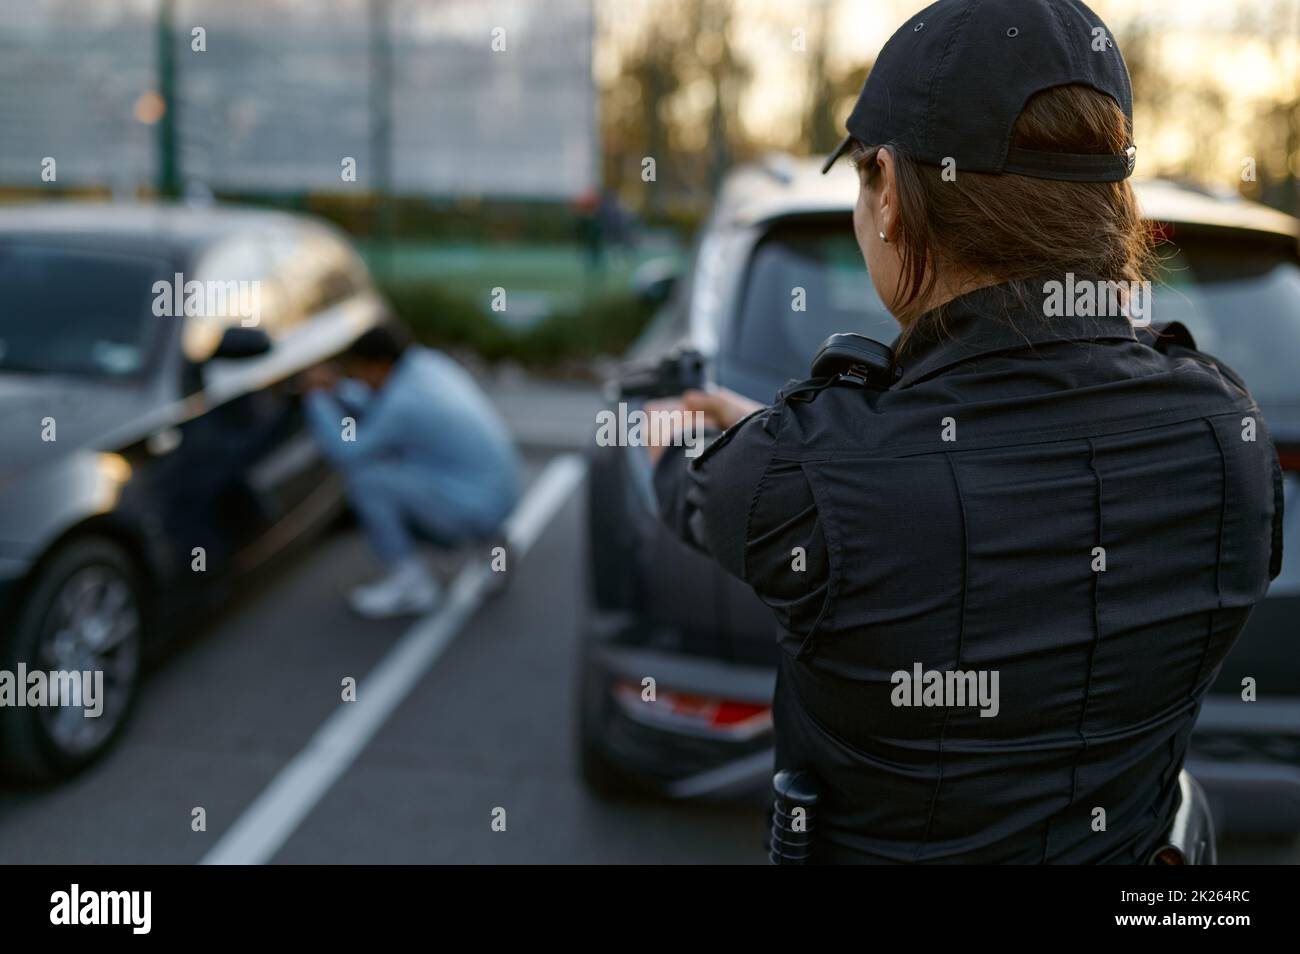 Policier visant un fusil à la vue arrière du voleur de voiture Banque D'Images